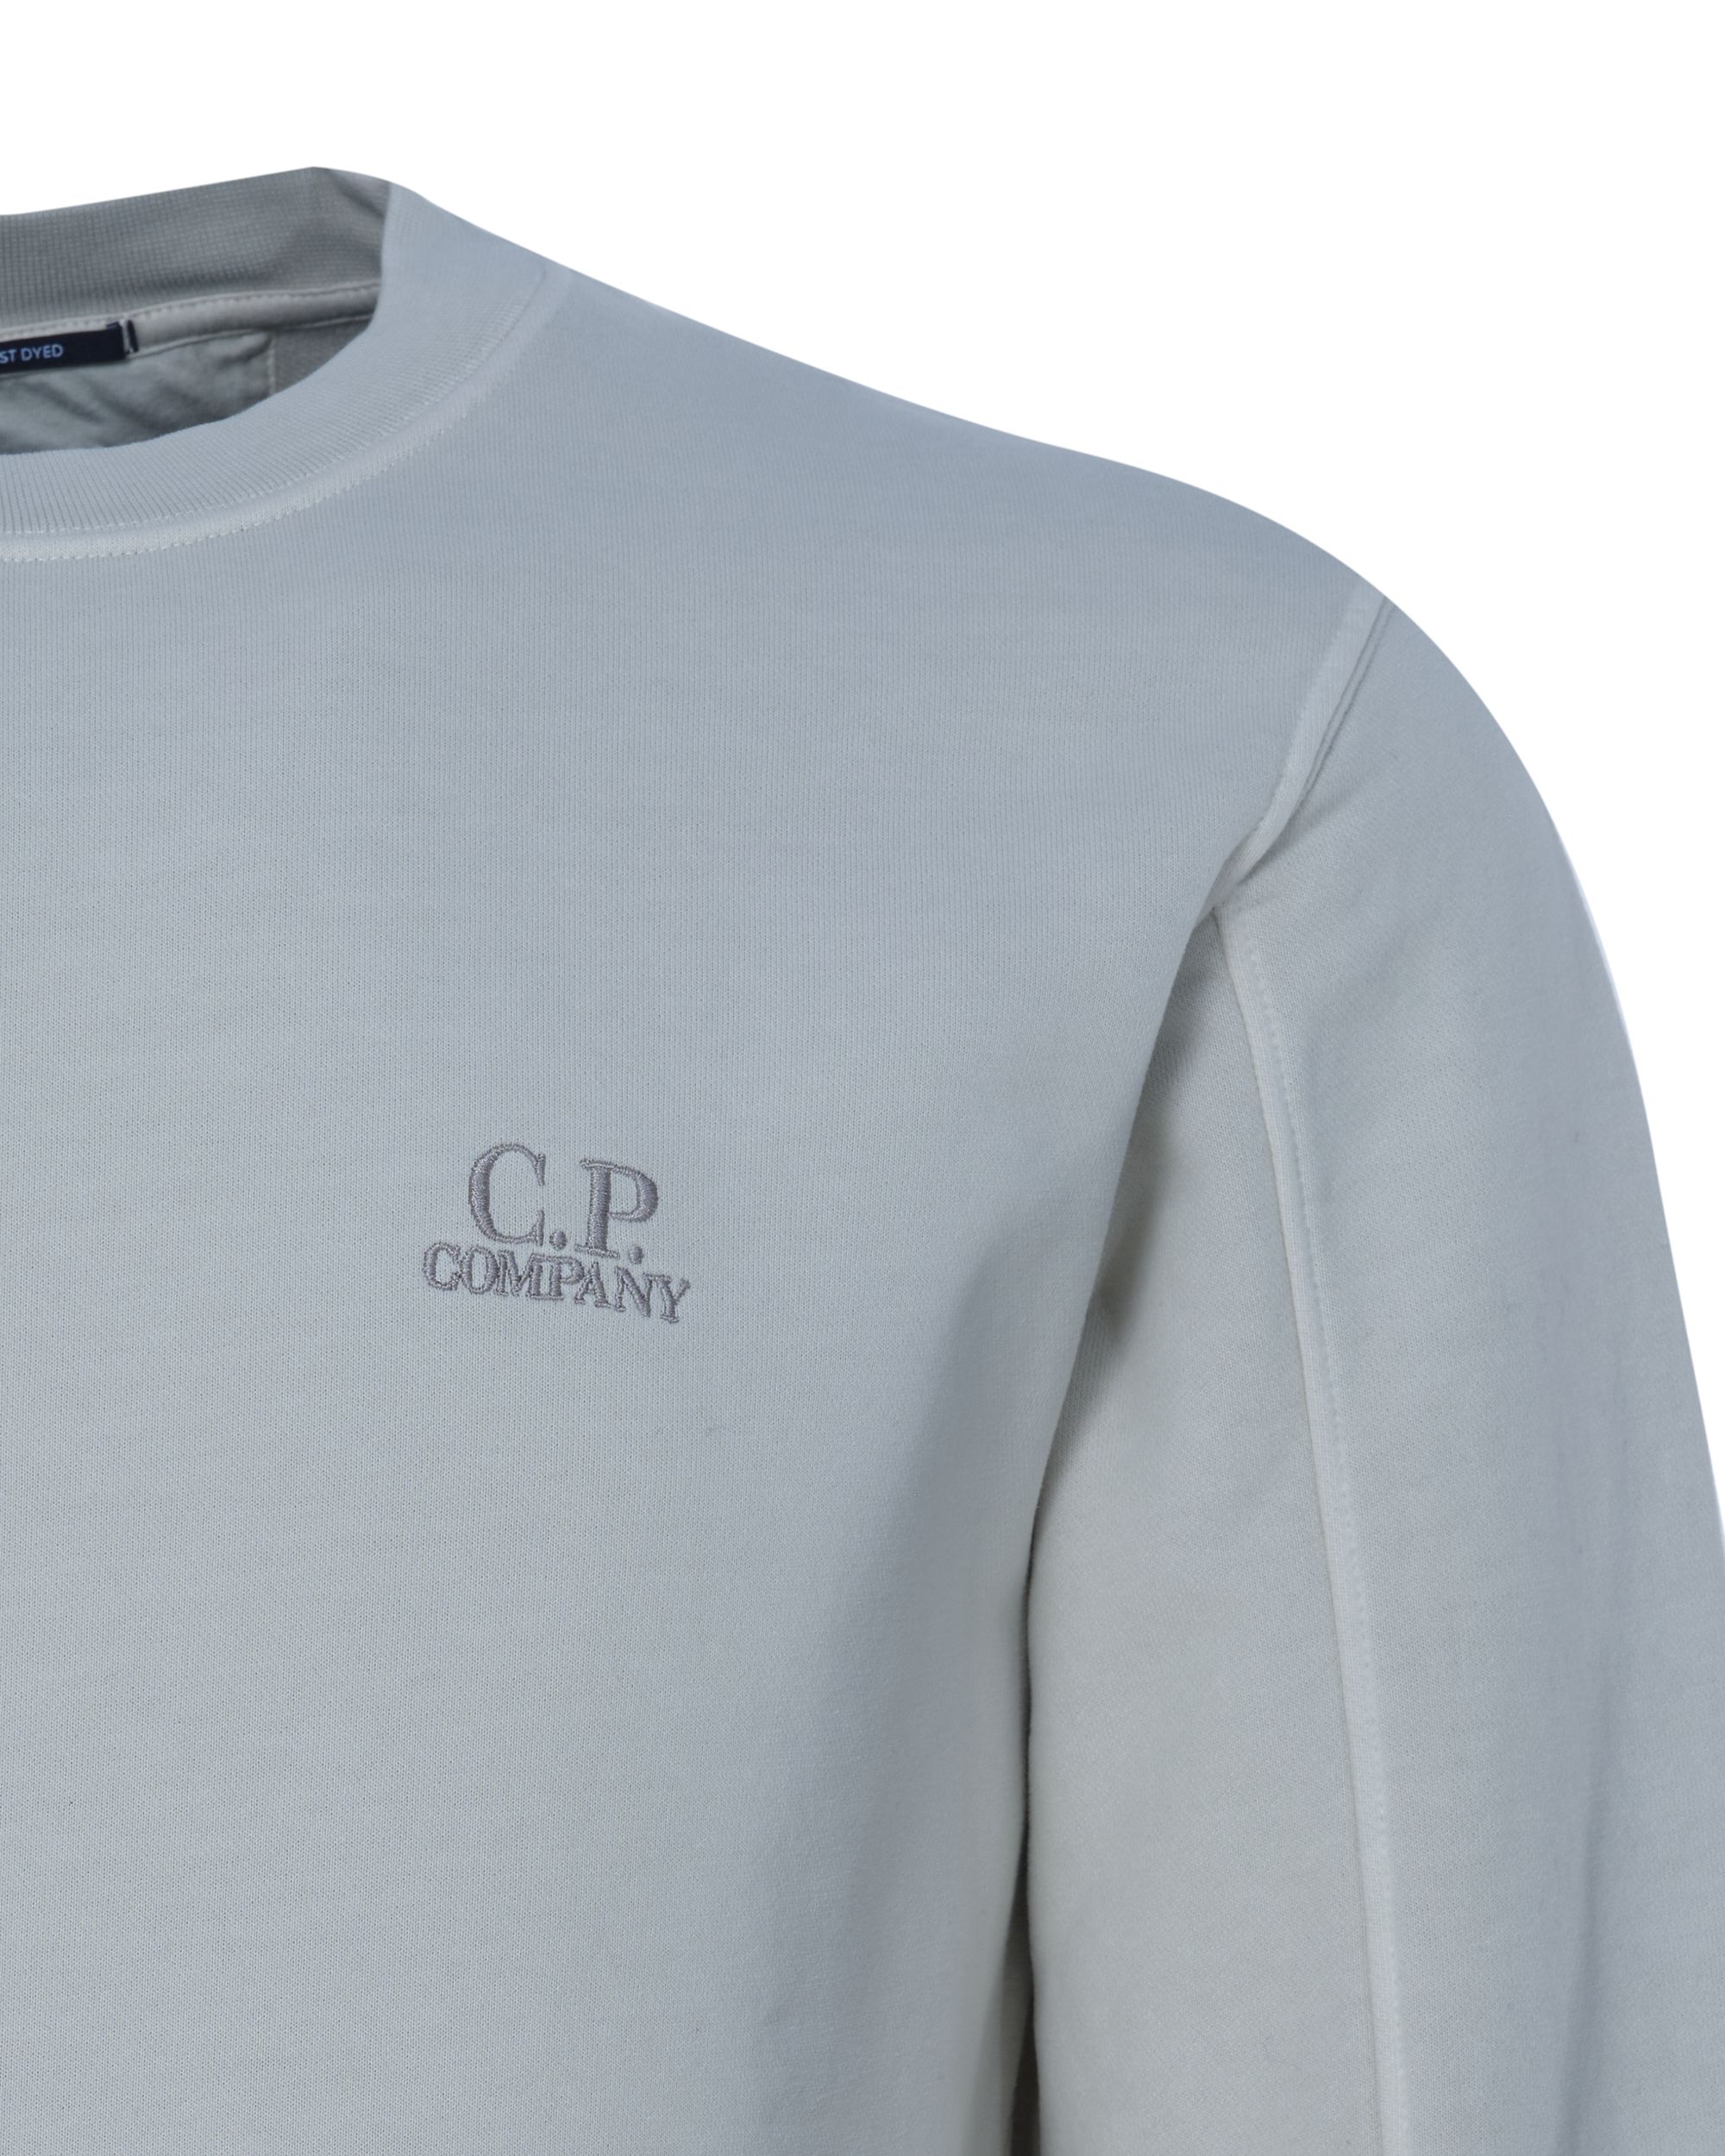 C.P Company Sweater Ecru 078735-001-L